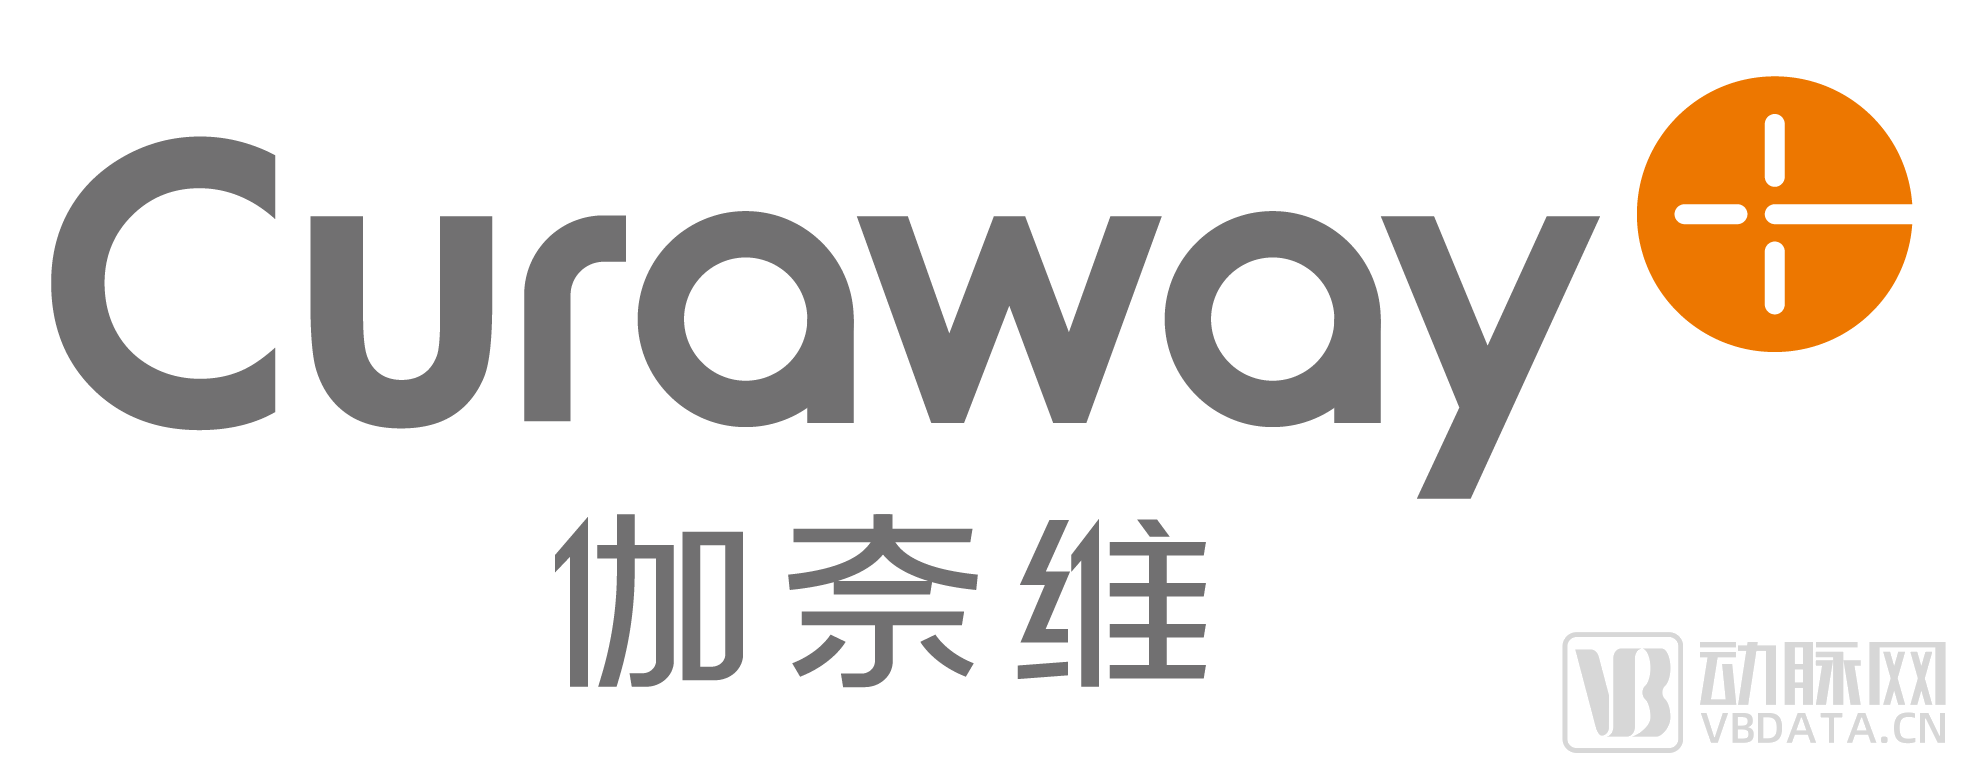 19_(胡志鹏)_伽奈维 Logo-02.png